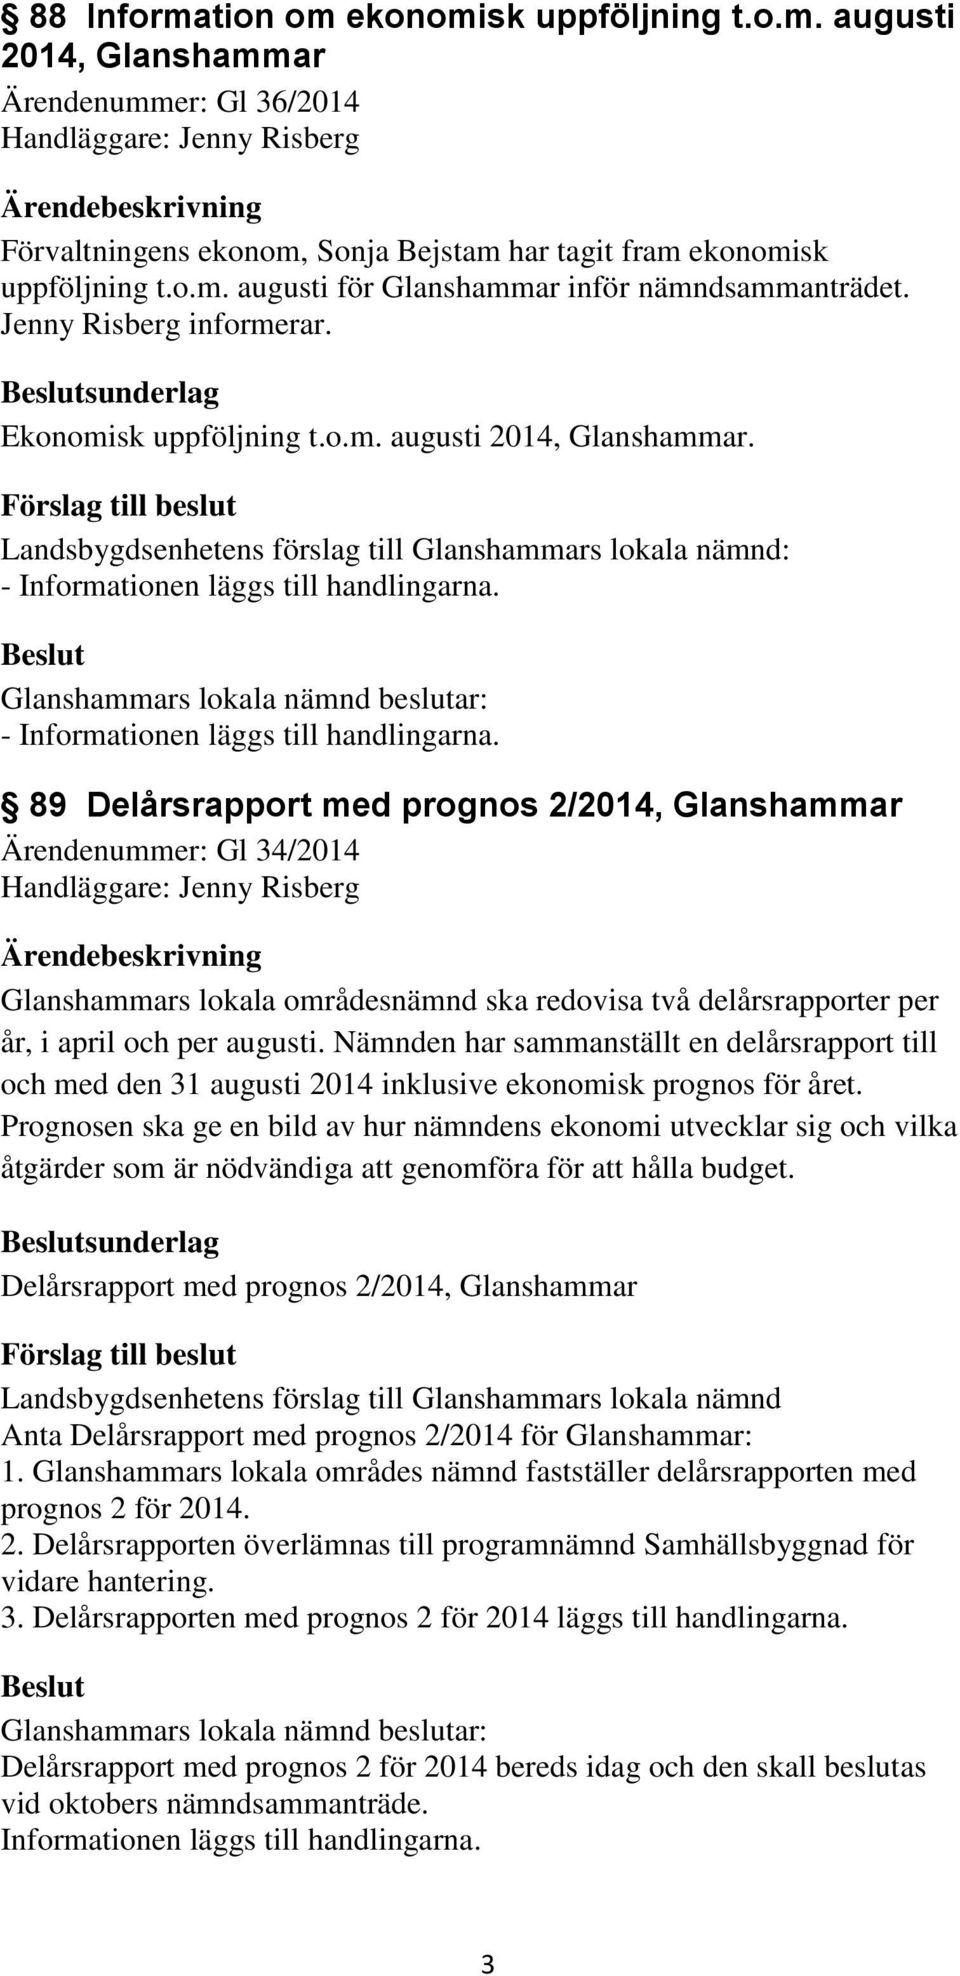 - - 89 Delårsrapport med prognos 2/2014, Glanshammar Ärendenummer: Gl 34/2014 Glanshammars lokala områdesnämnd ska redovisa två delårsrapporter per år, i april och per augusti.